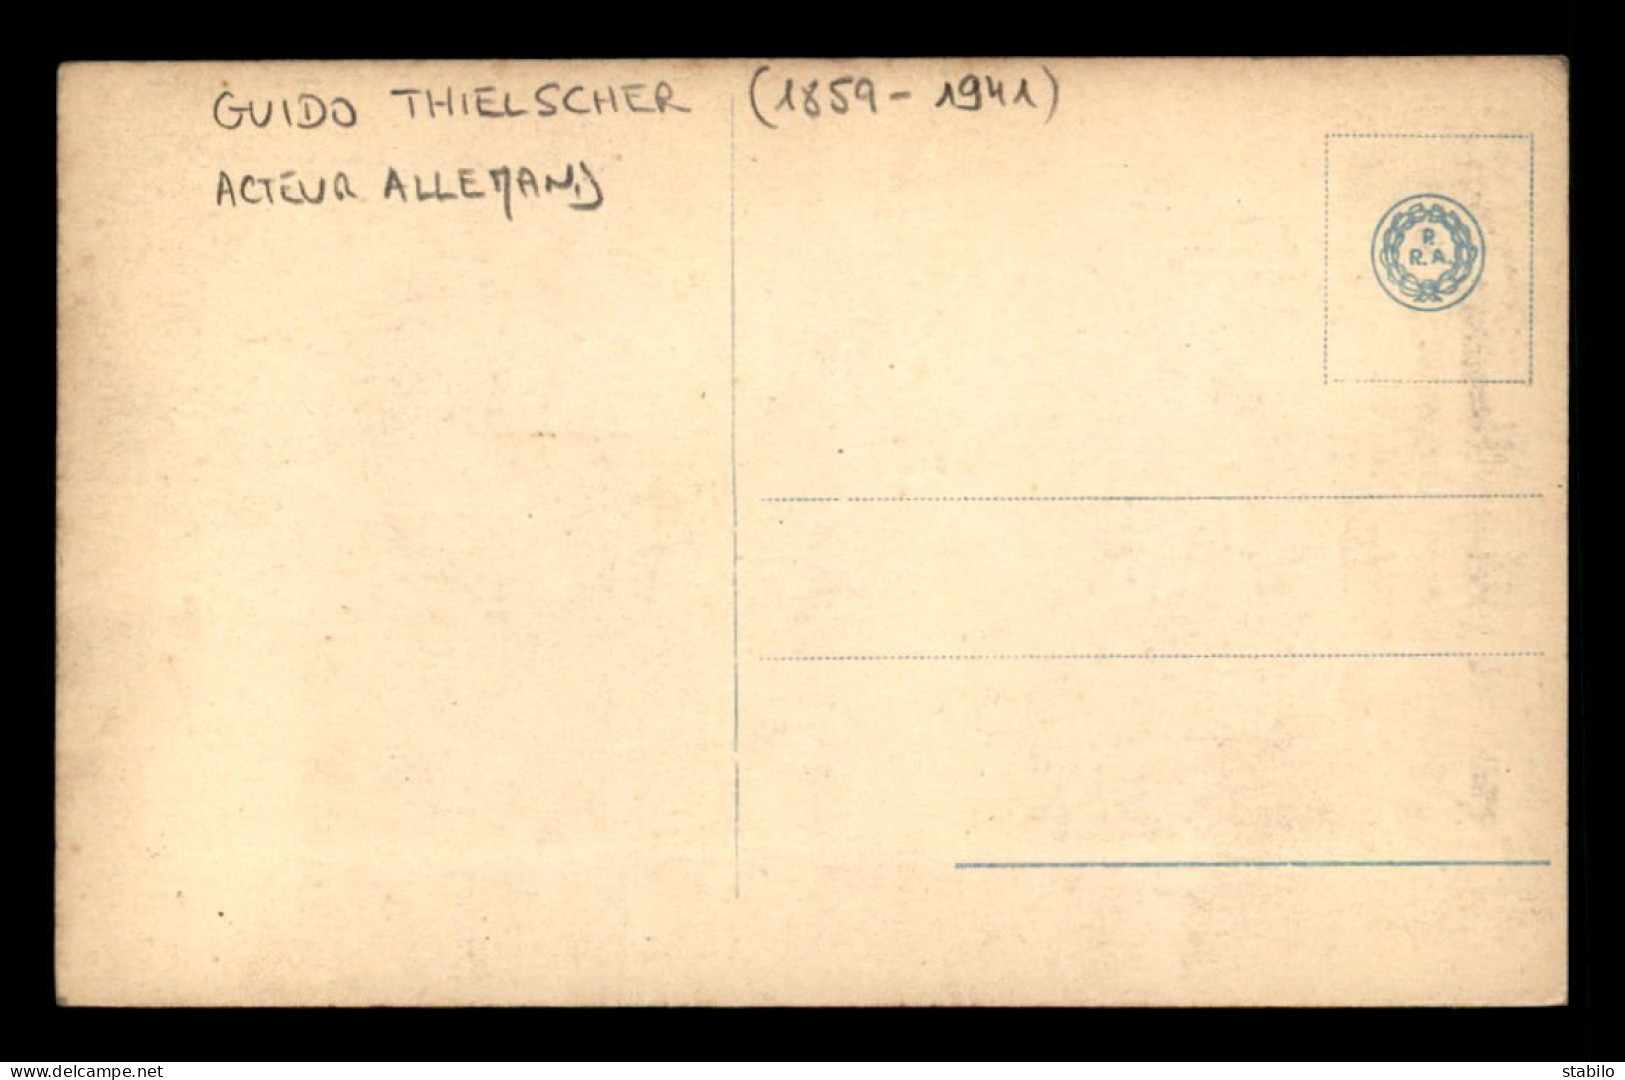 ARTISTES - GUIDO THIELSCHER (1859-1941) - ACTEUR ALLEMAND - Künstler